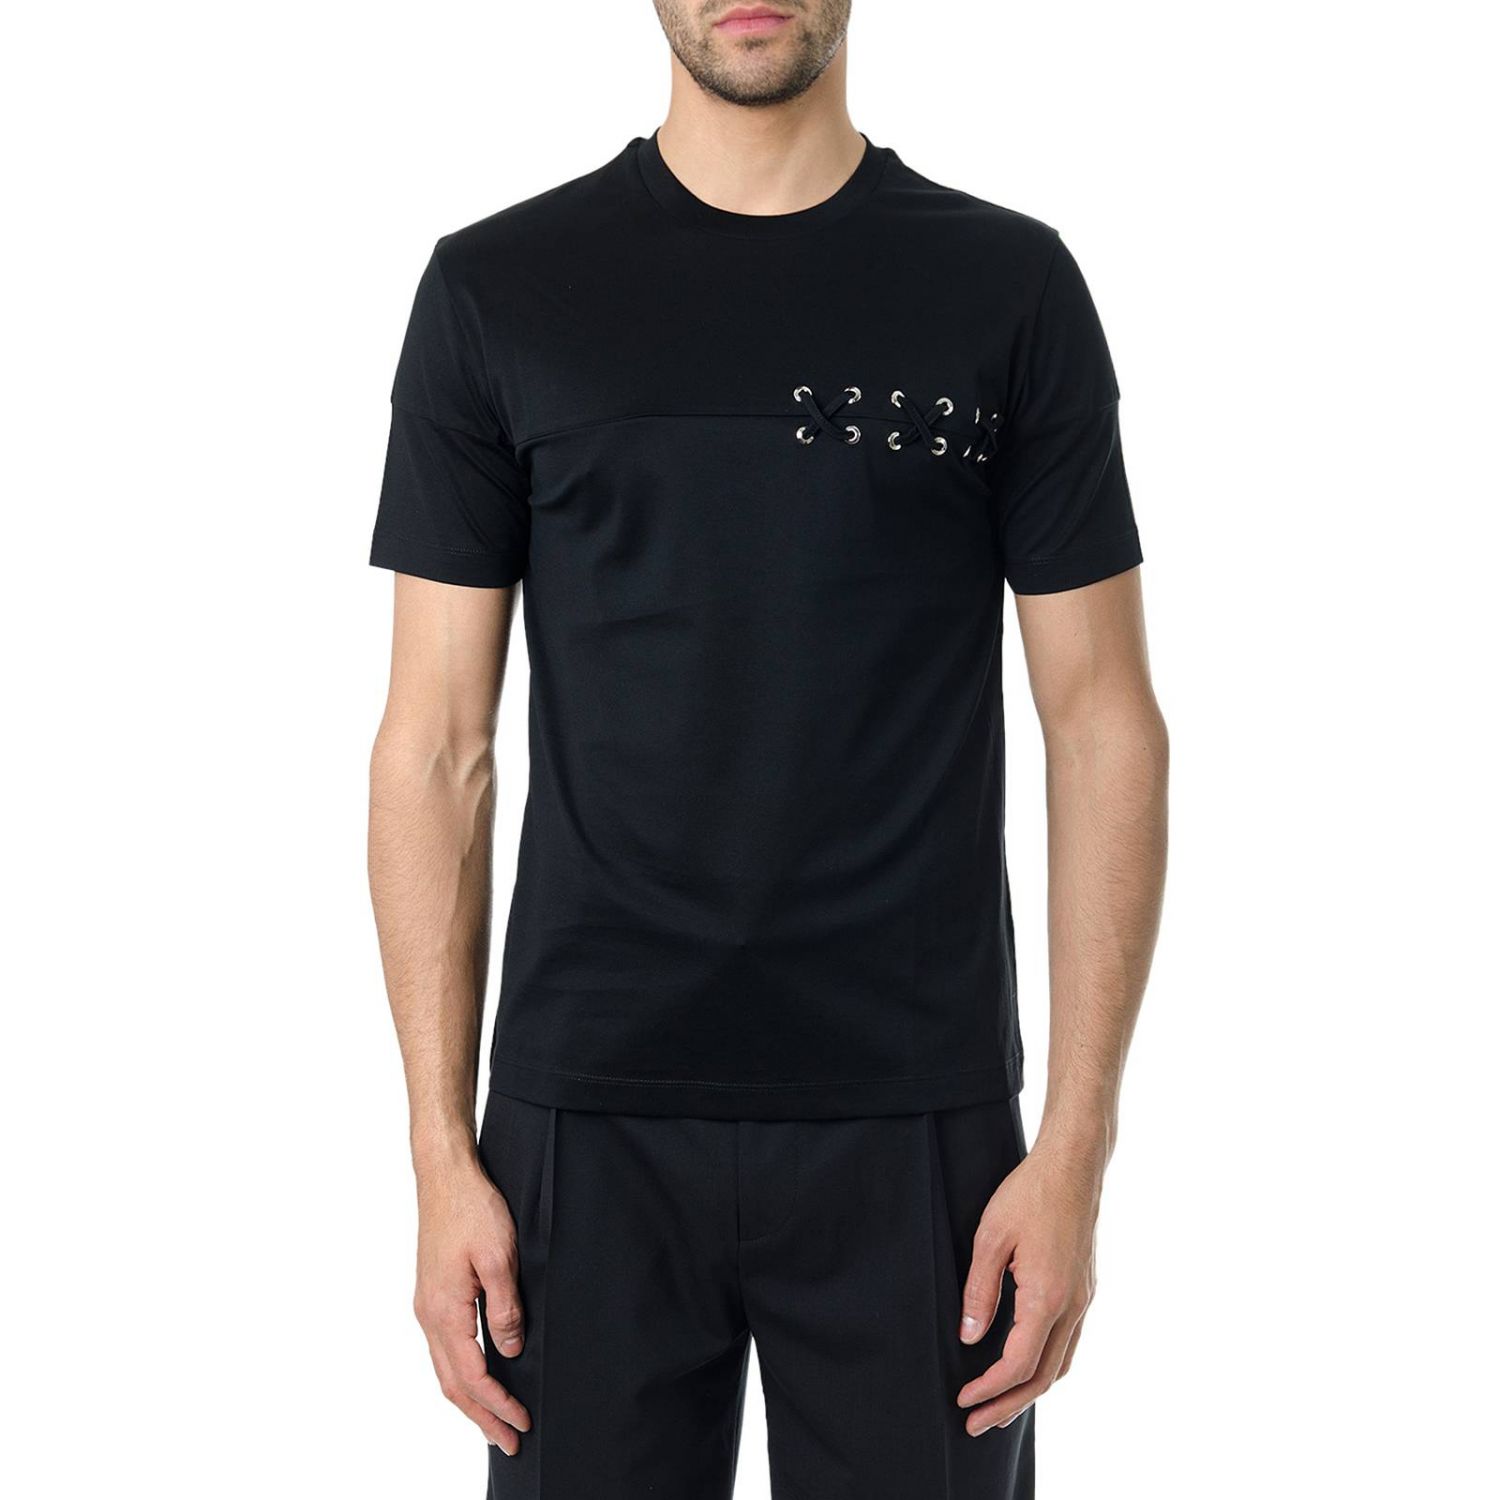 T-shirt men Les Hommes | T-Shirt Les Hommes Men Black | T-Shirt Les ...